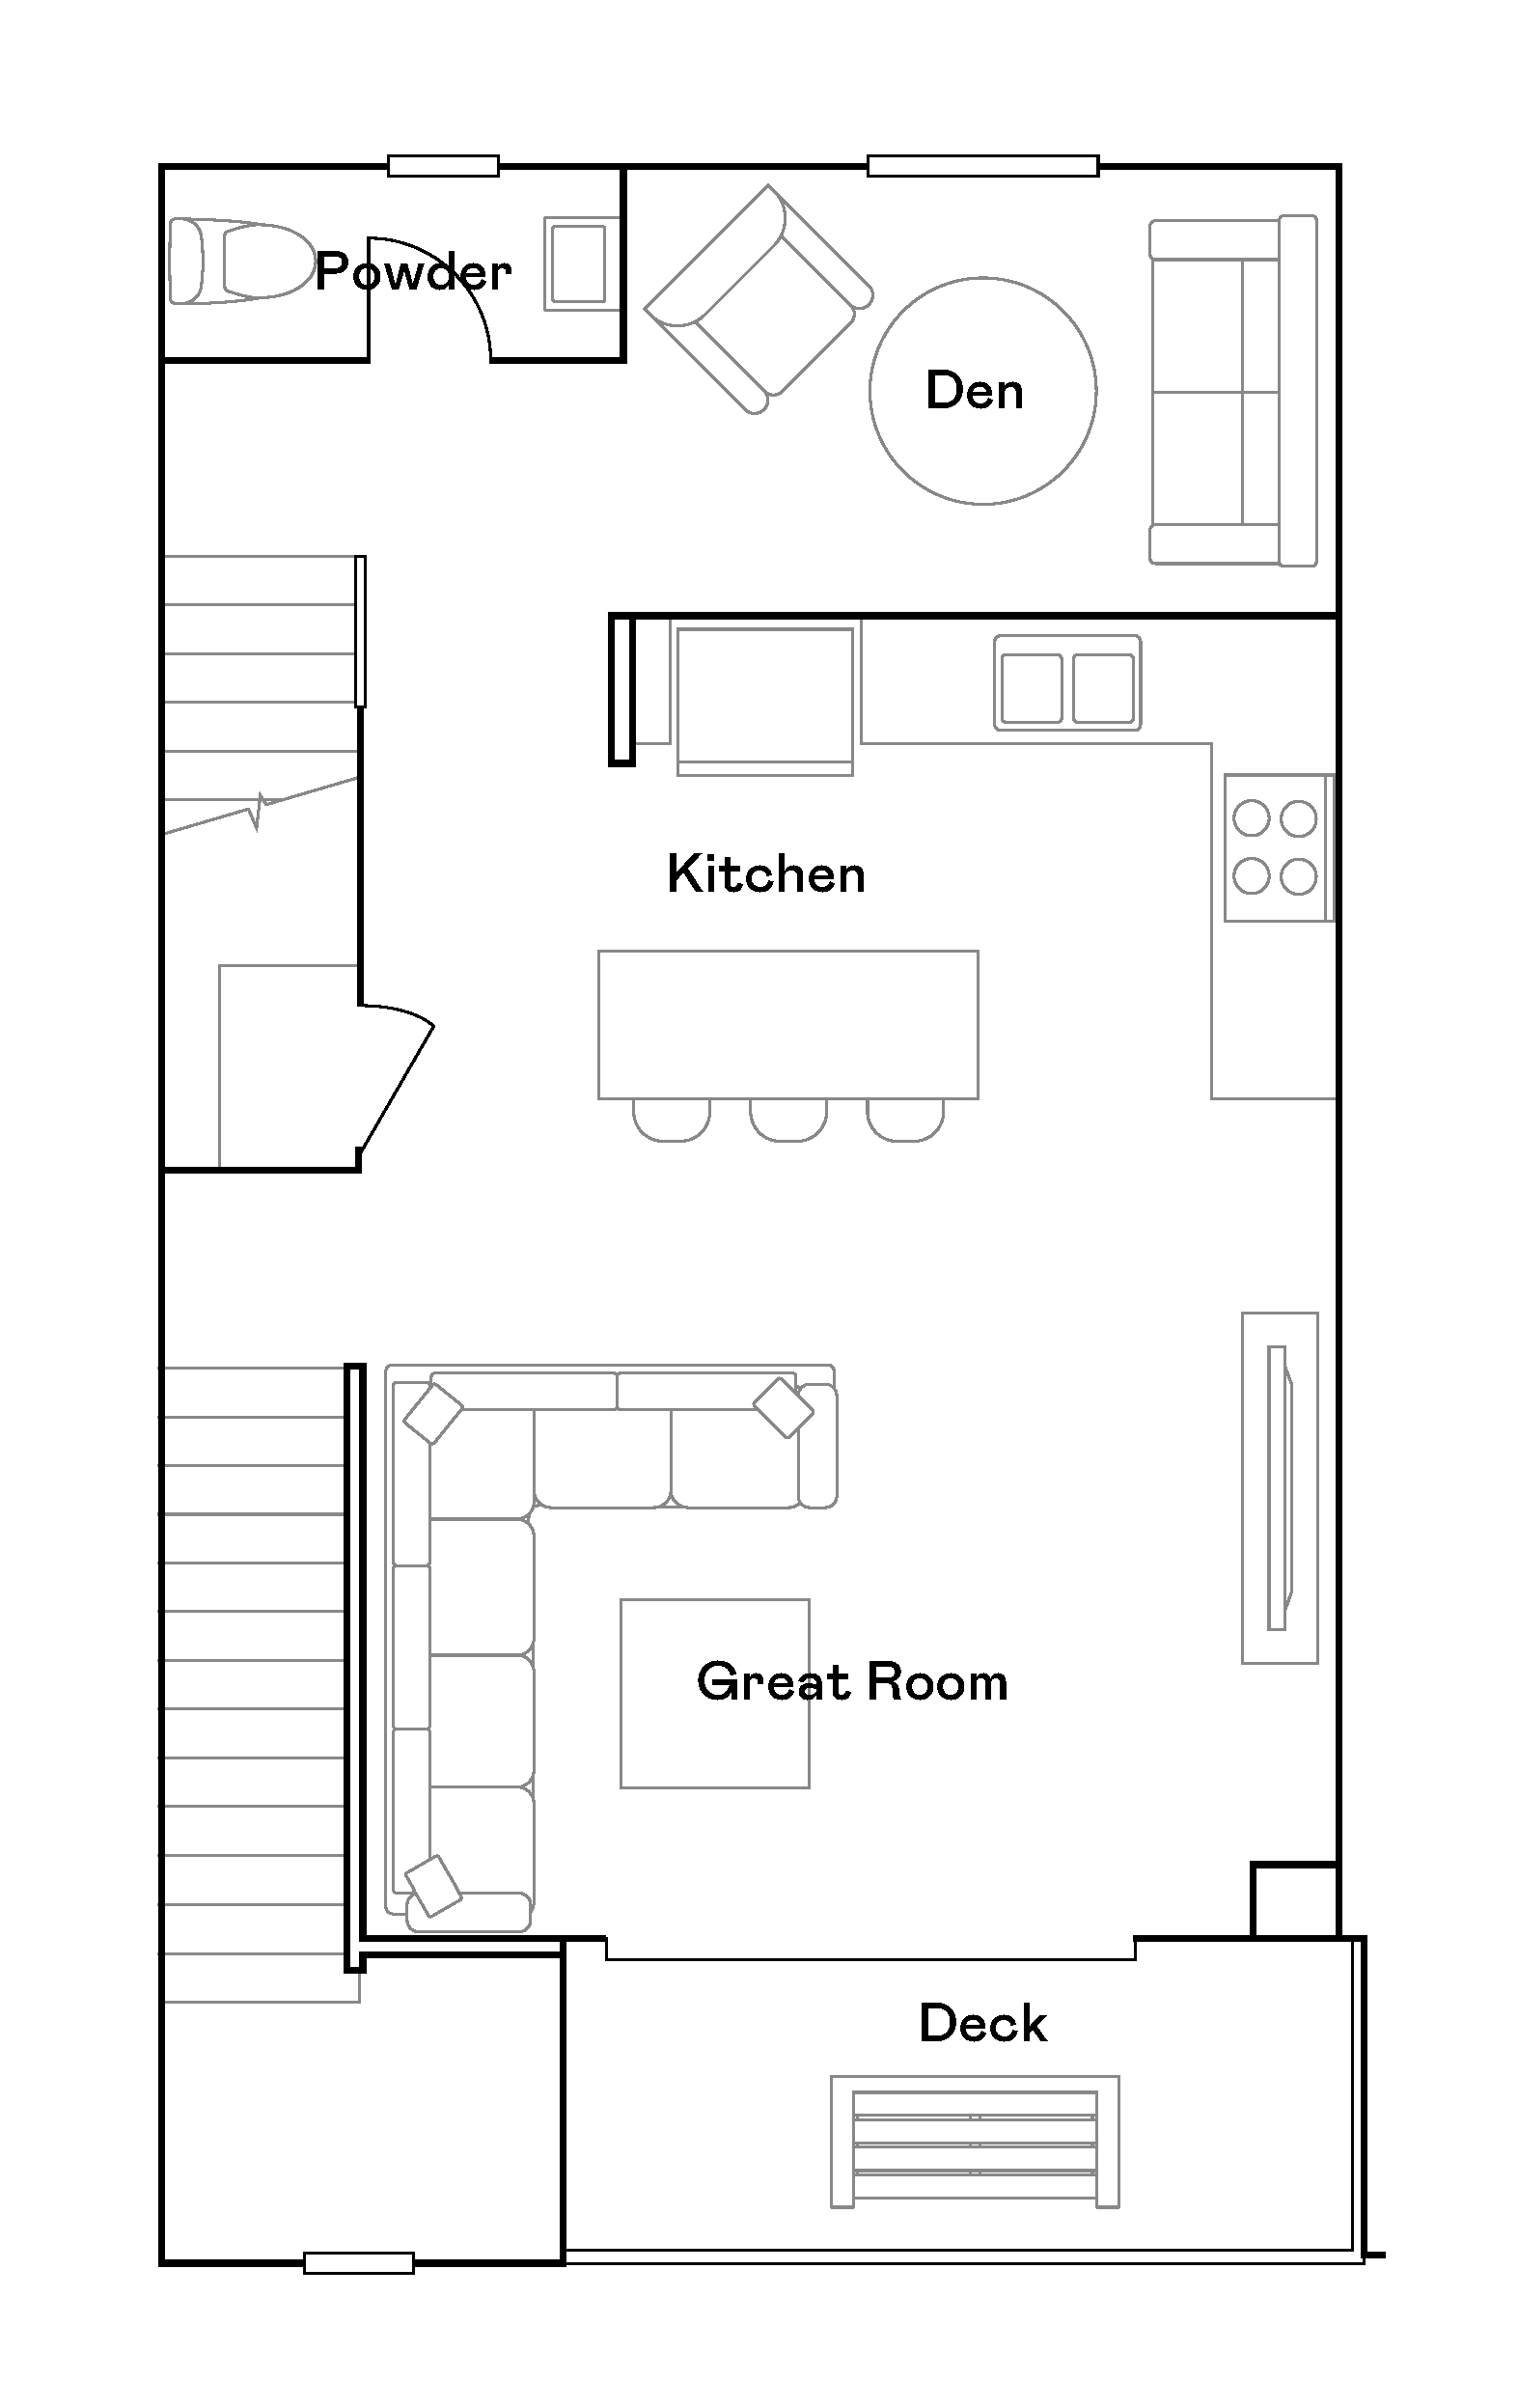 Willow Plan 8 second floor